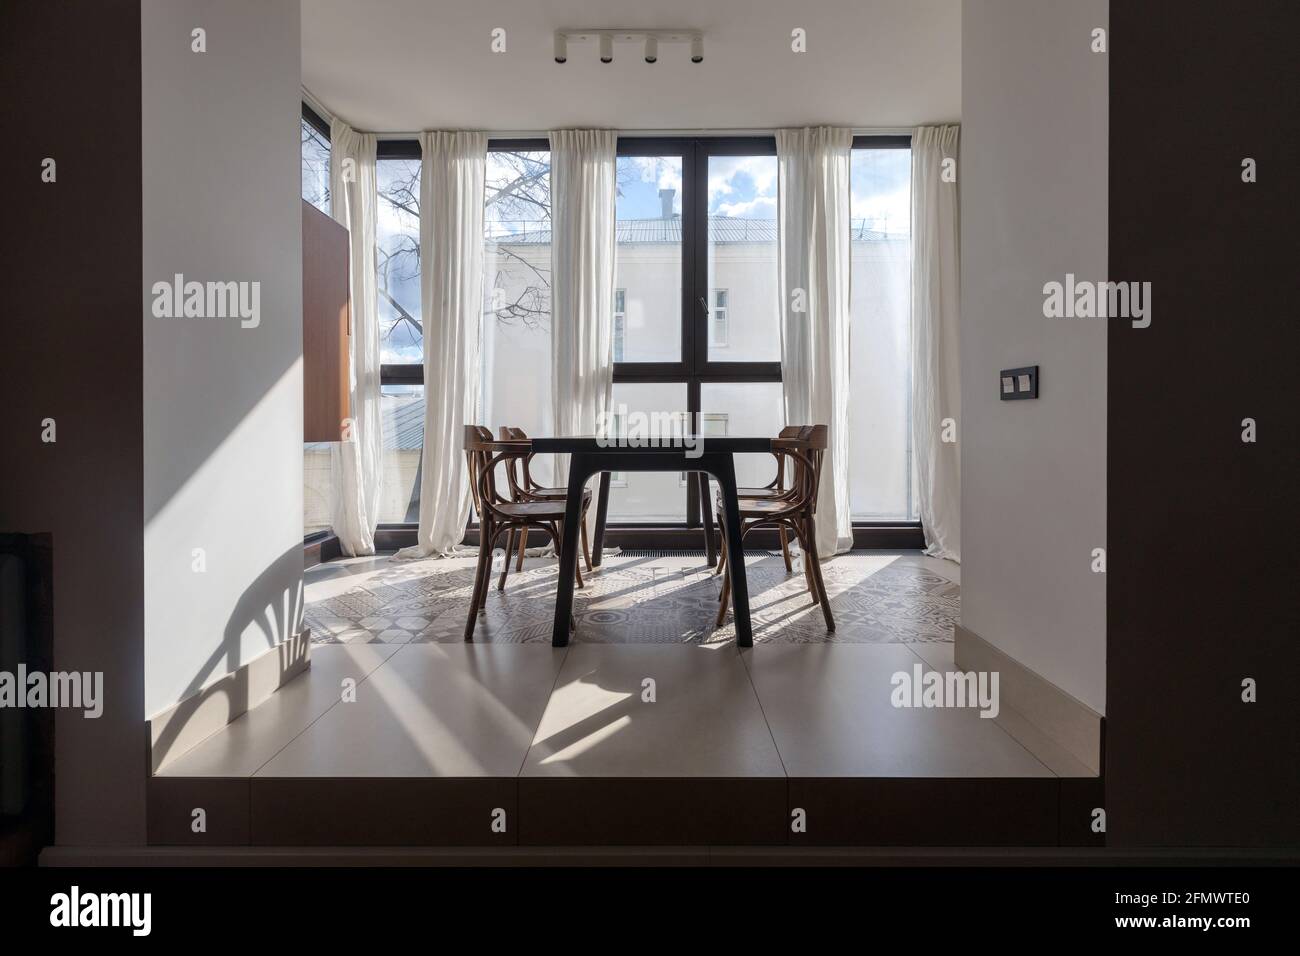 Mesa de comedor y sillas situadas frente a la ventana panorámica apartamento moderno con decoración minimalista, con cortinas blancas diseño interior Foto de stock